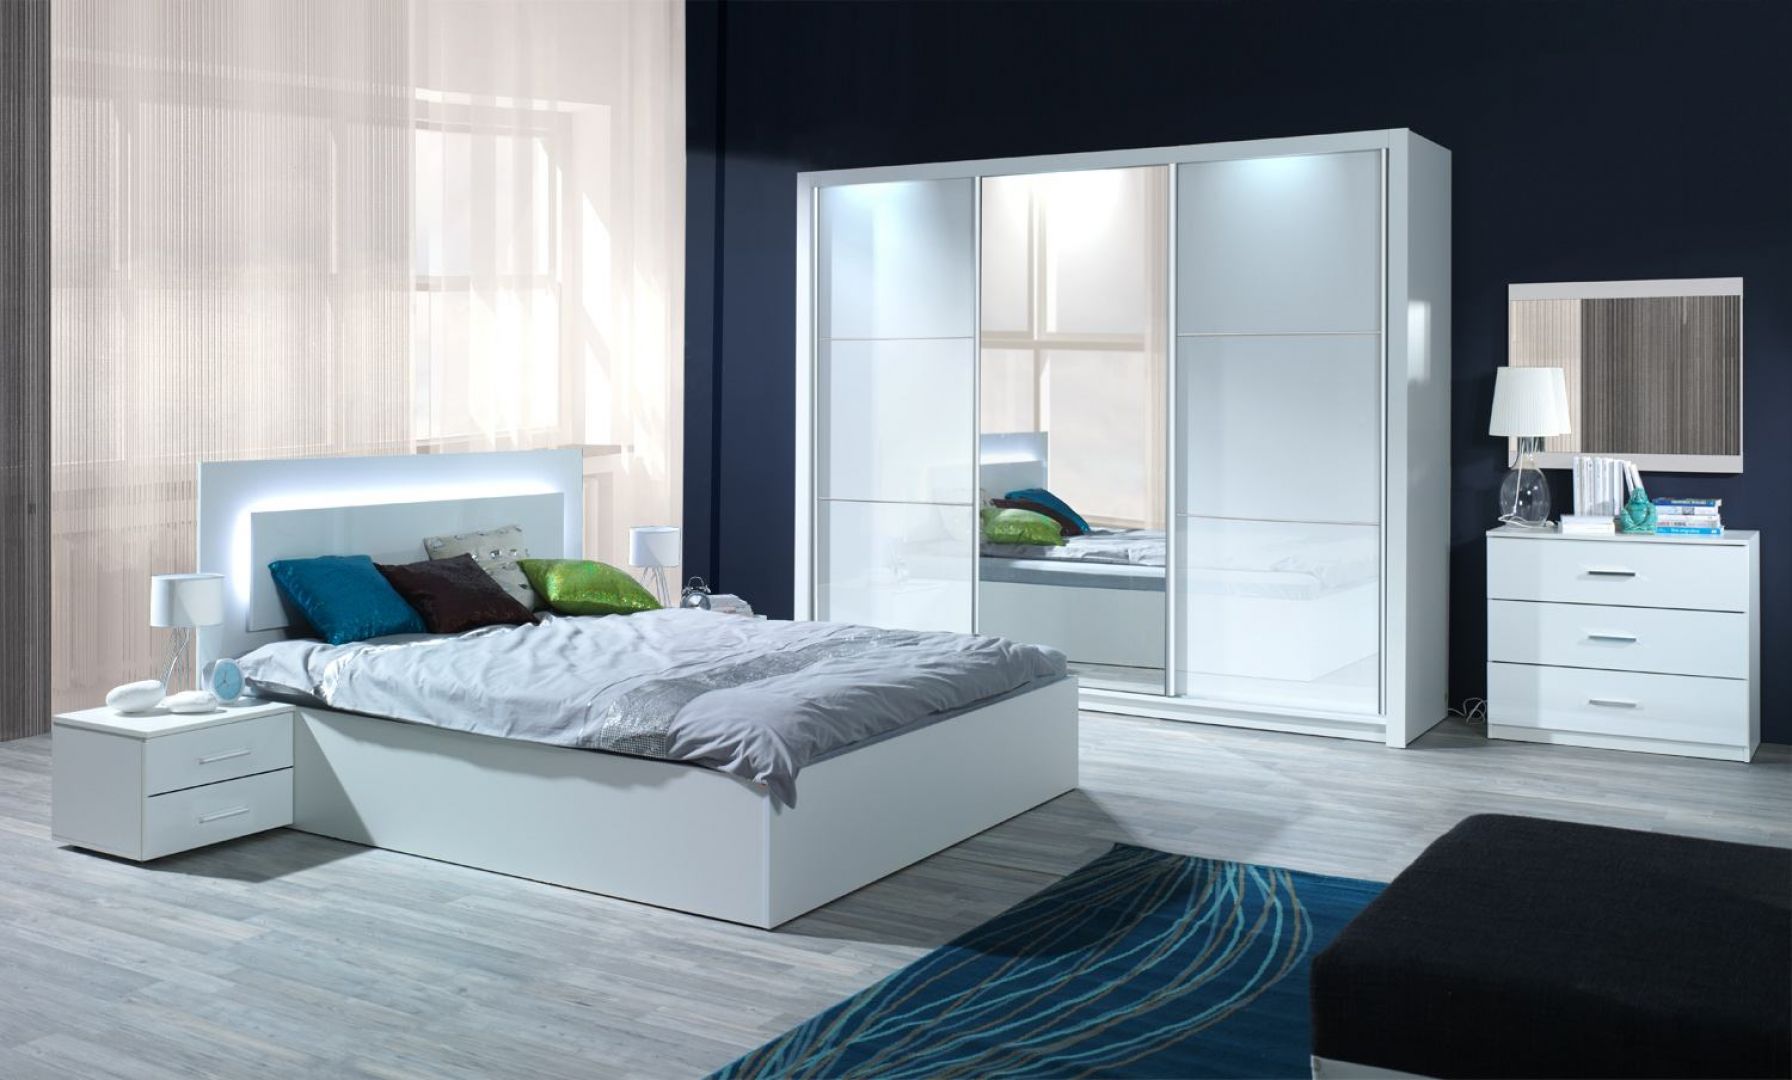 Sypialnia Siena w kolorze białym na wysoki połysk. Oparcie łóżka wyposażone jest w efektowny system oświetlania. Fot. Agata Meble 